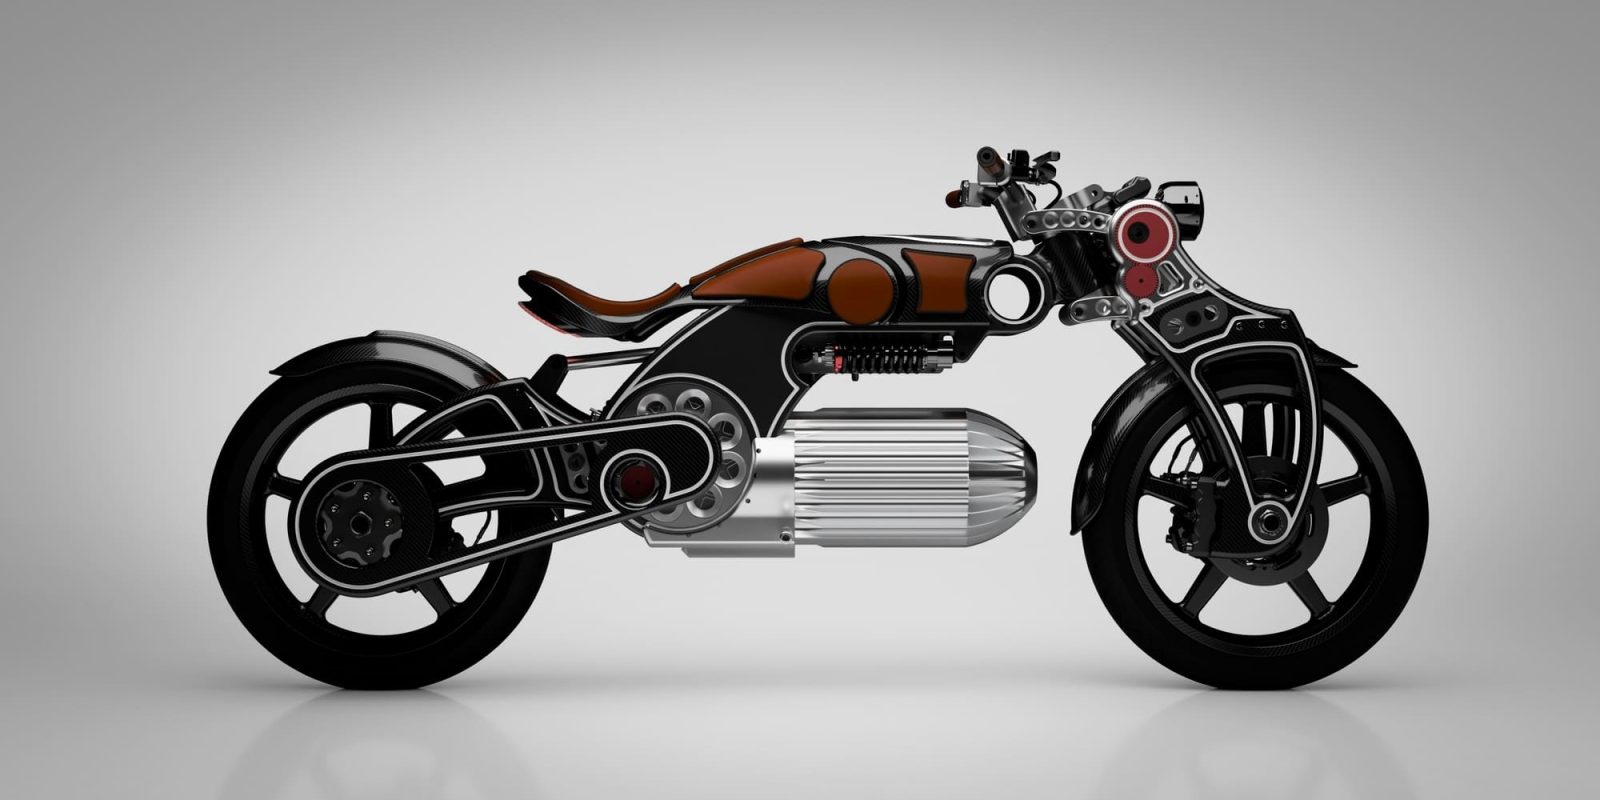 Thiết kế mới của Hades xe máy điện